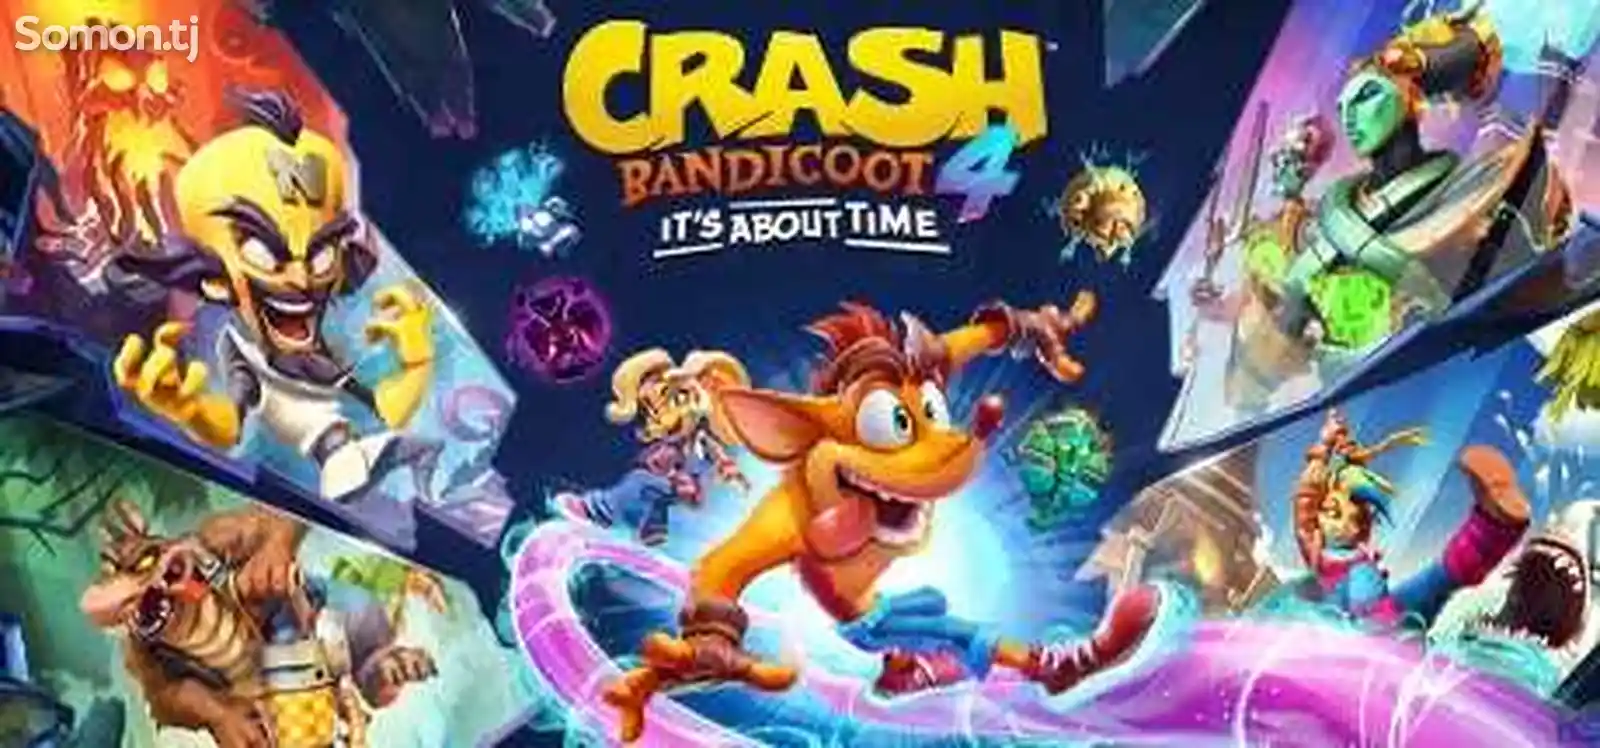 Игра Crah Bandicoot 4 для PS4/5.05/6.72/7.02/7.55/9.00